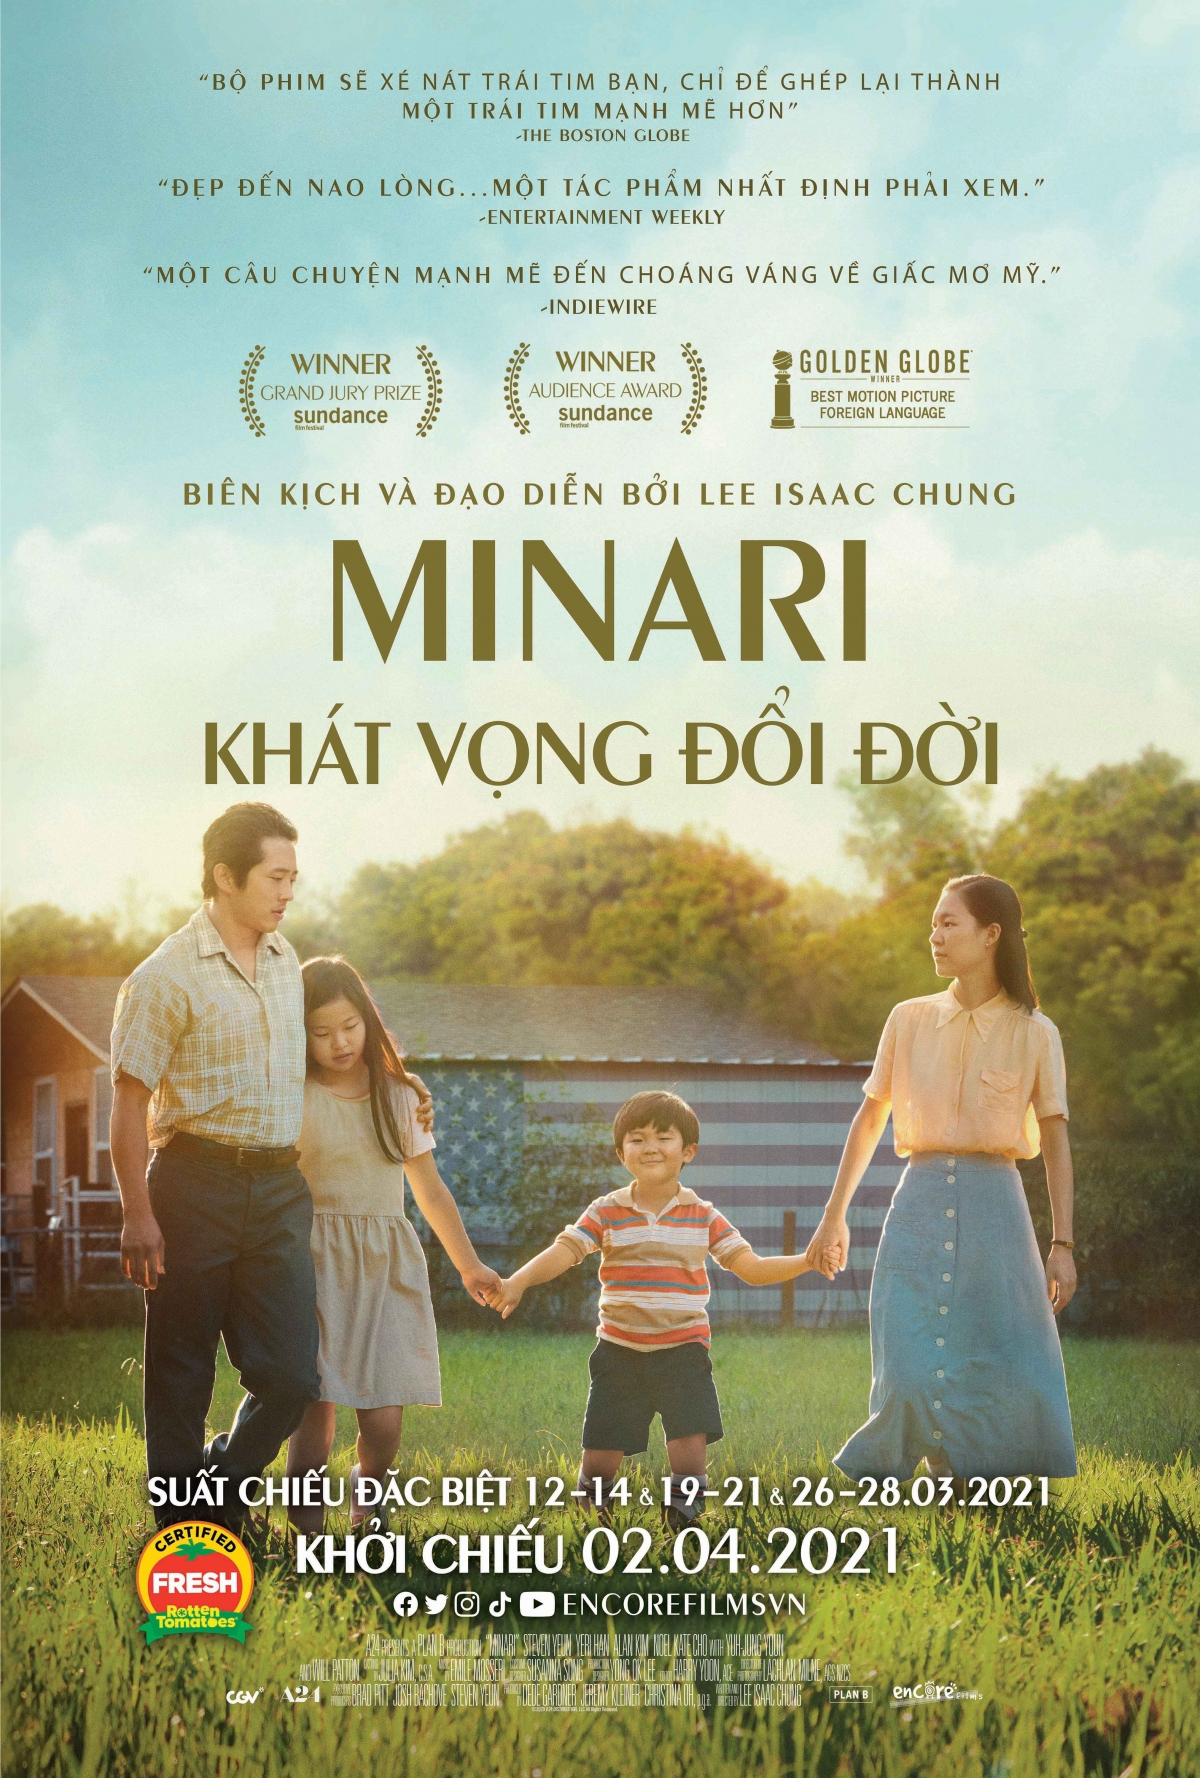 Minari là bộ phim đề cao tình cảm gia đình của một gia đình người Hàn Quốc di cư sang Mỹ